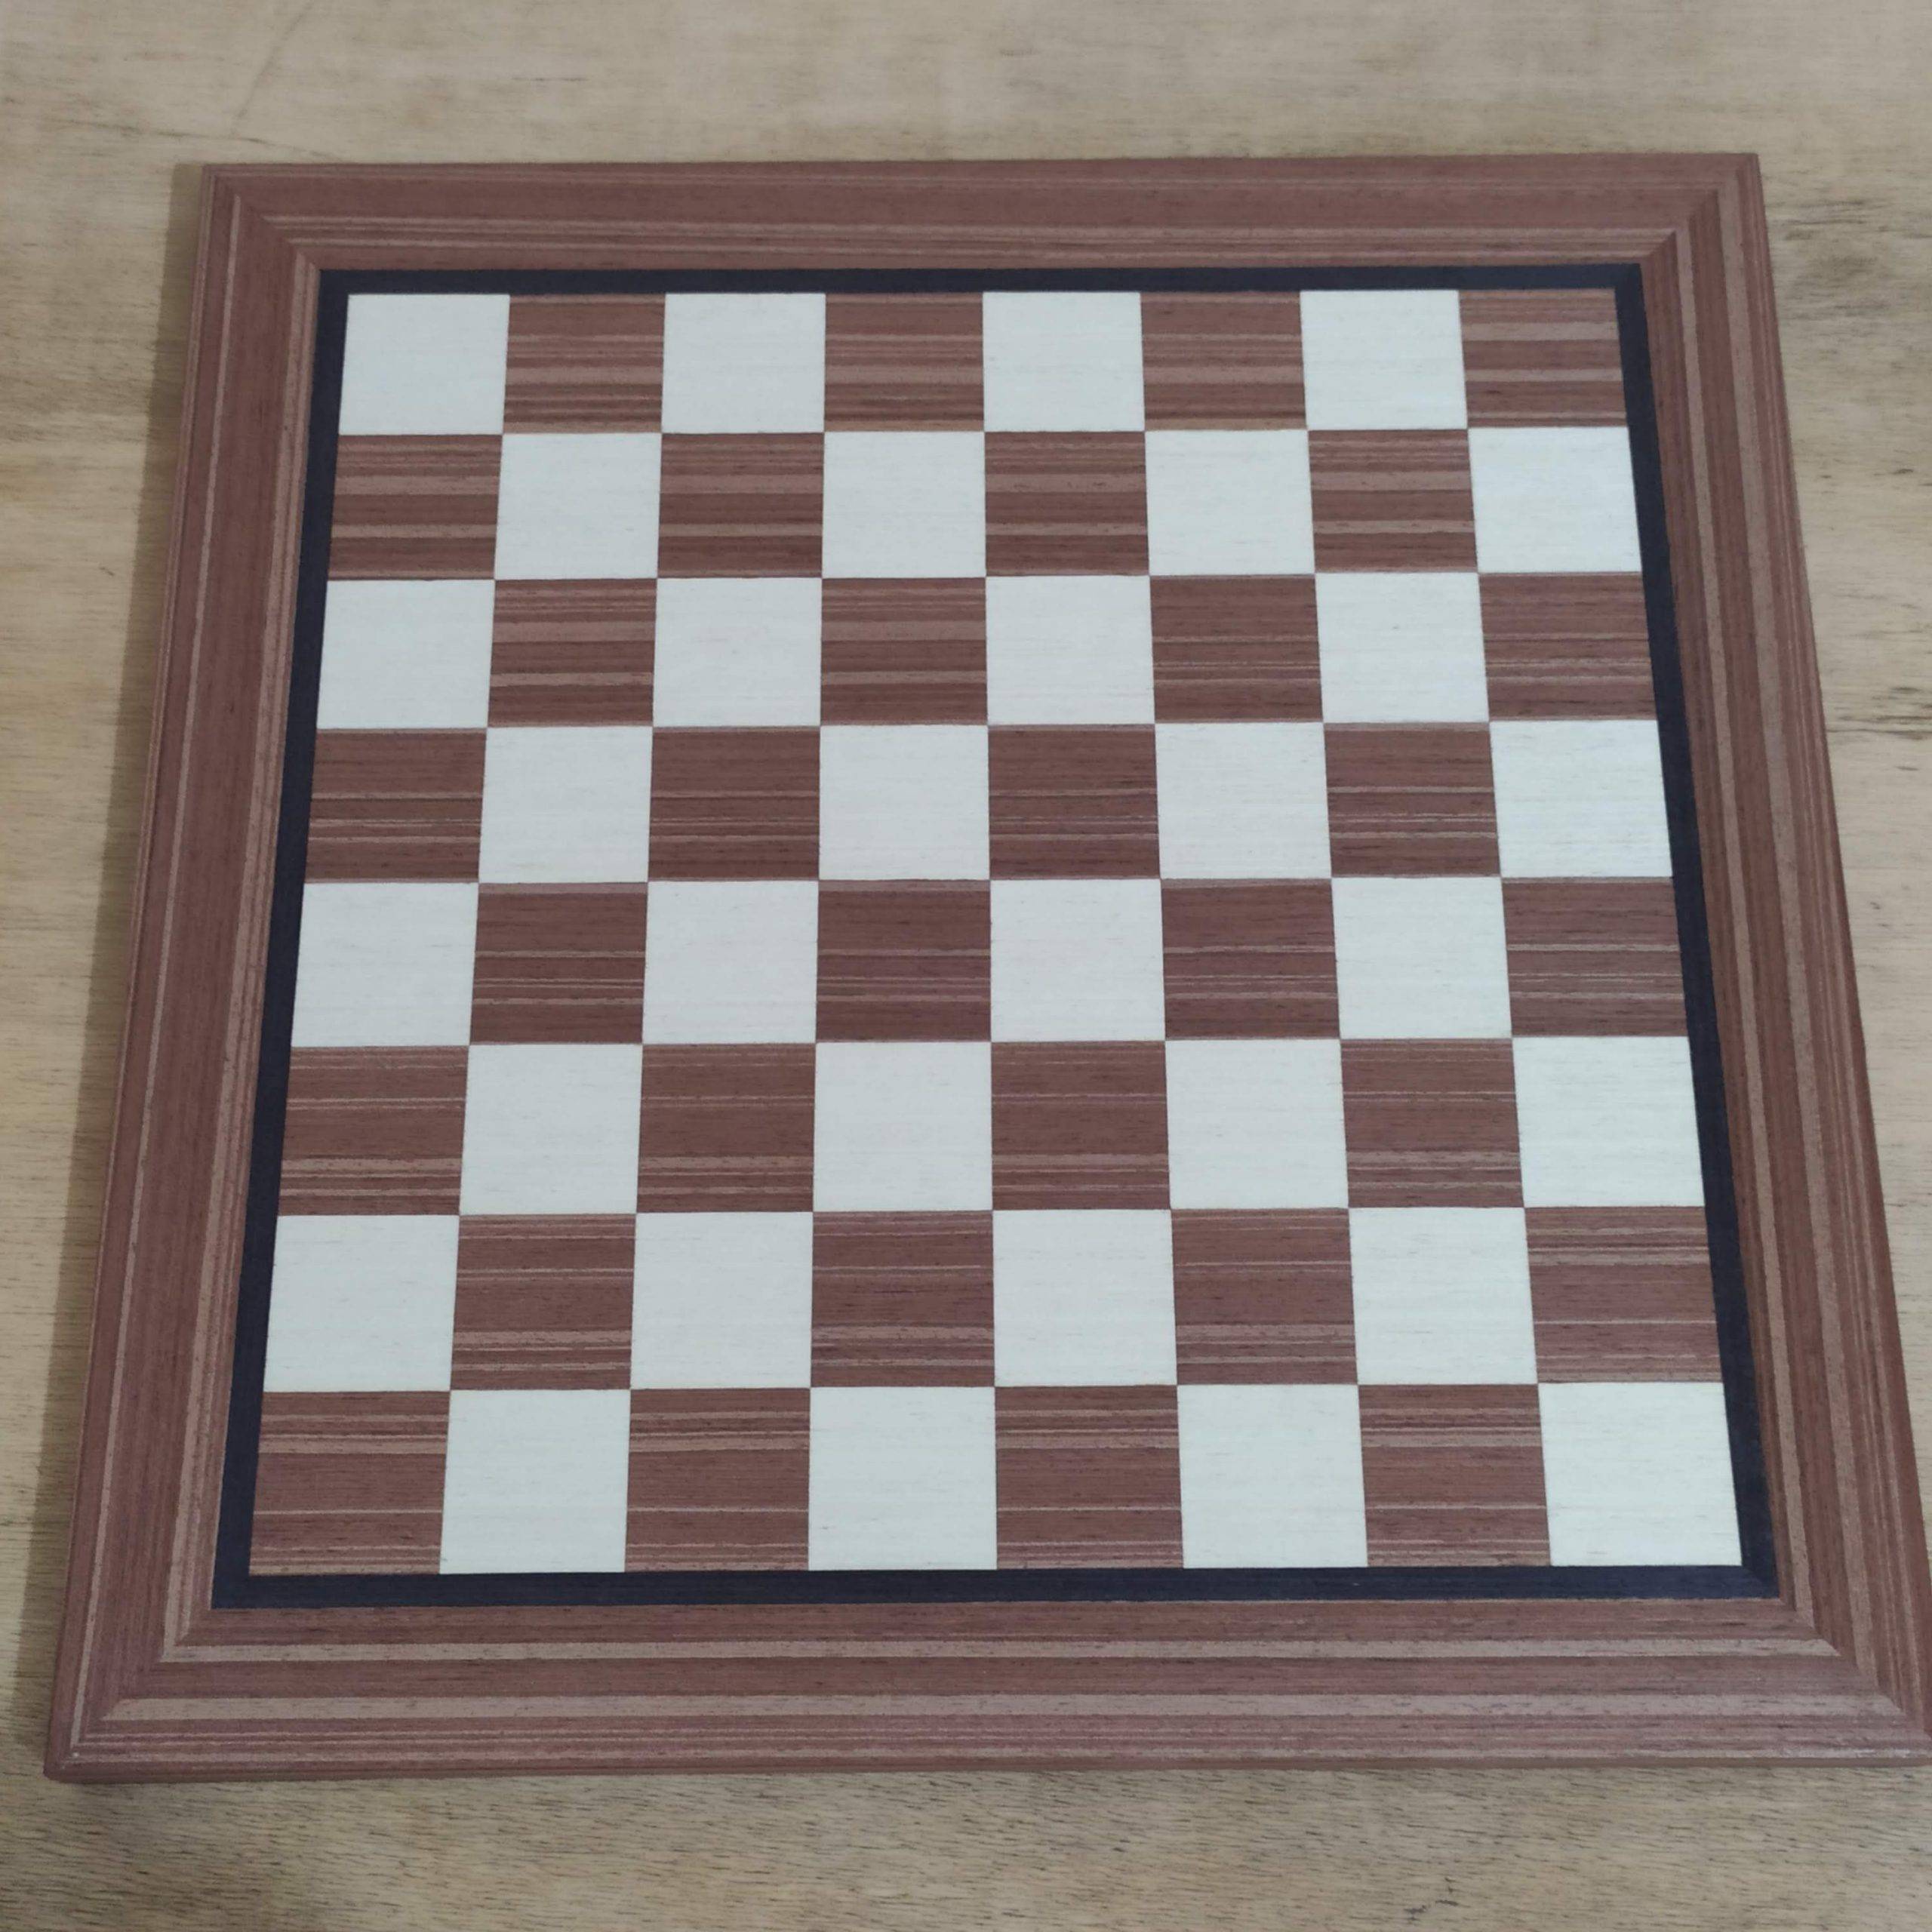 Tabuleiro de Xadrez em madeira 30x30 Linheiro e Marfim